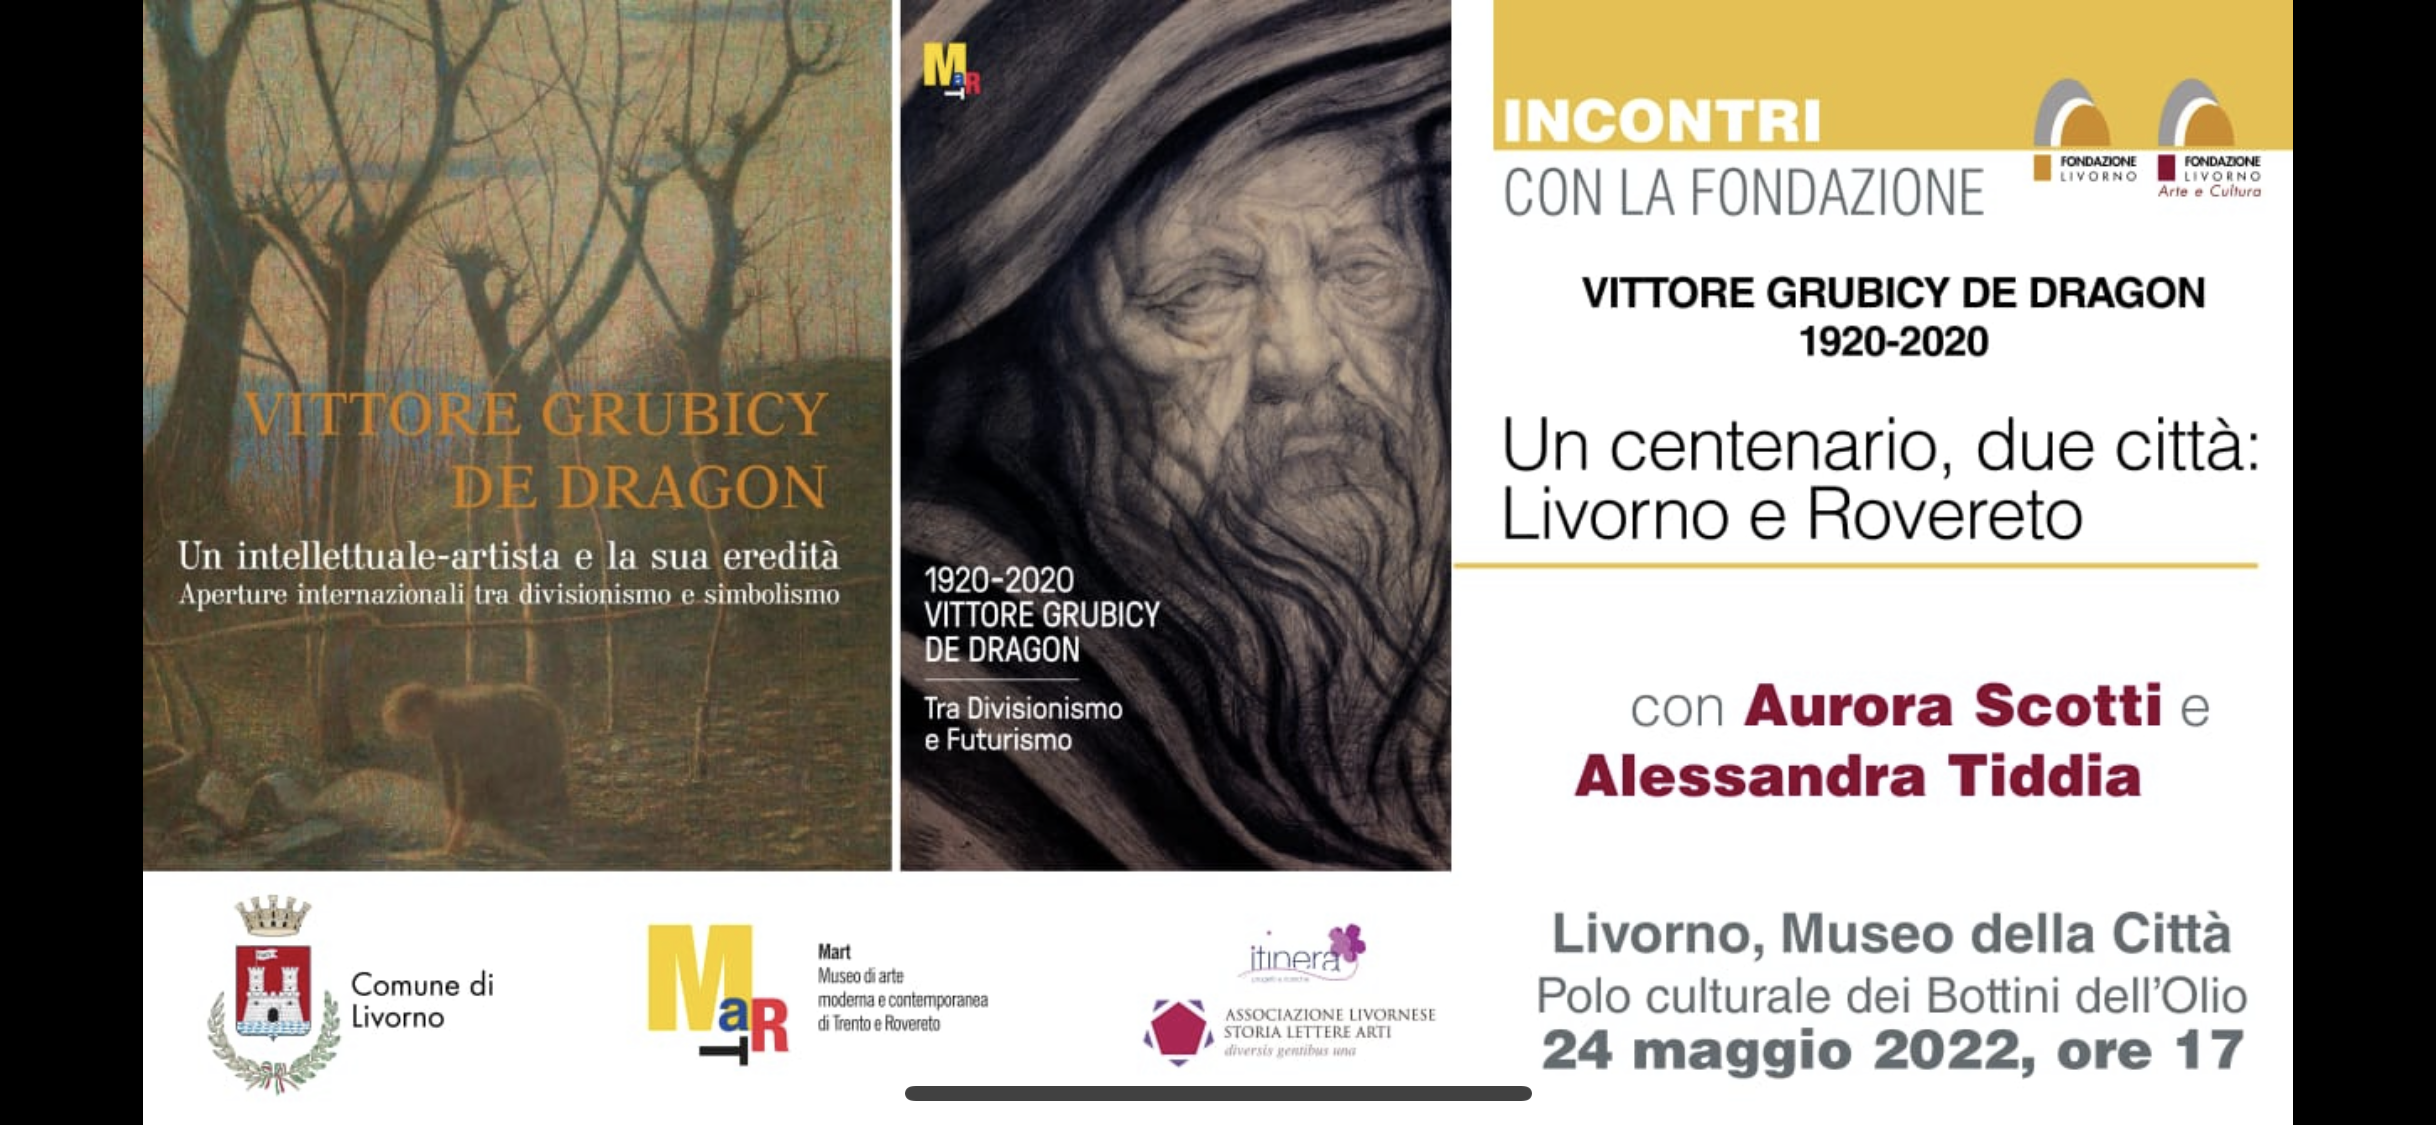 Livorno e Rovereto unite nell’arte 